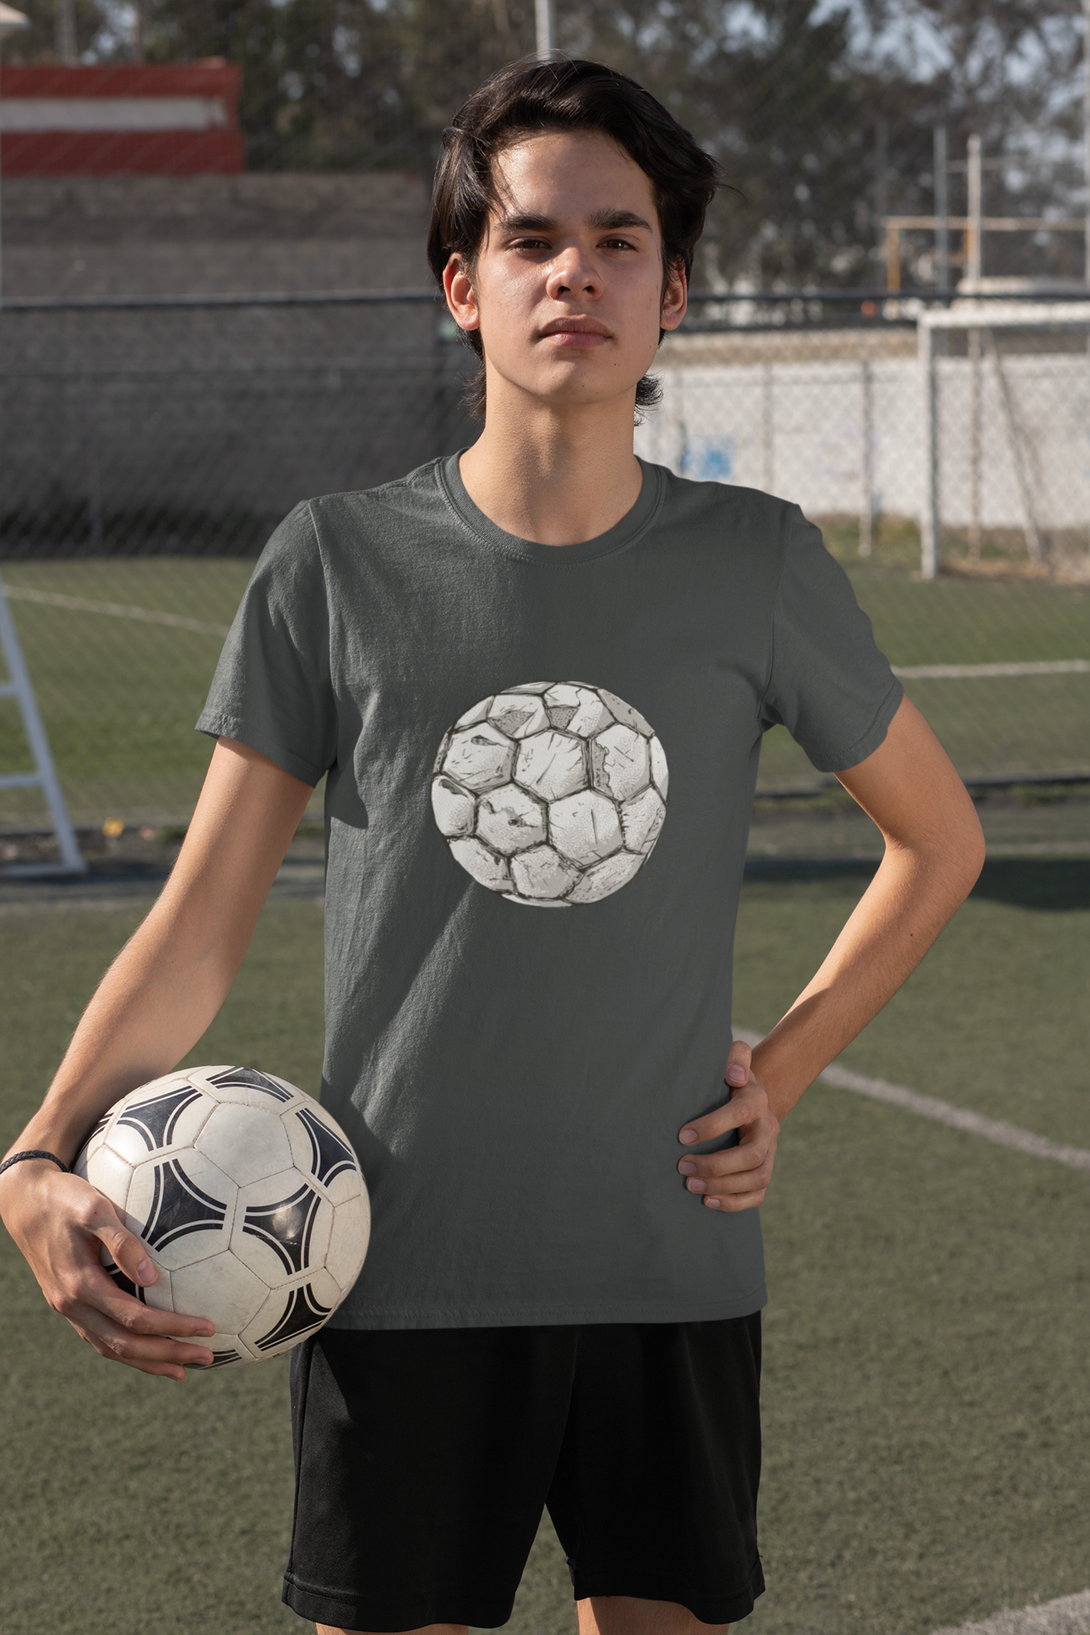 Soccer Ball Printed T-Shirt For Men - WowWaves - 5